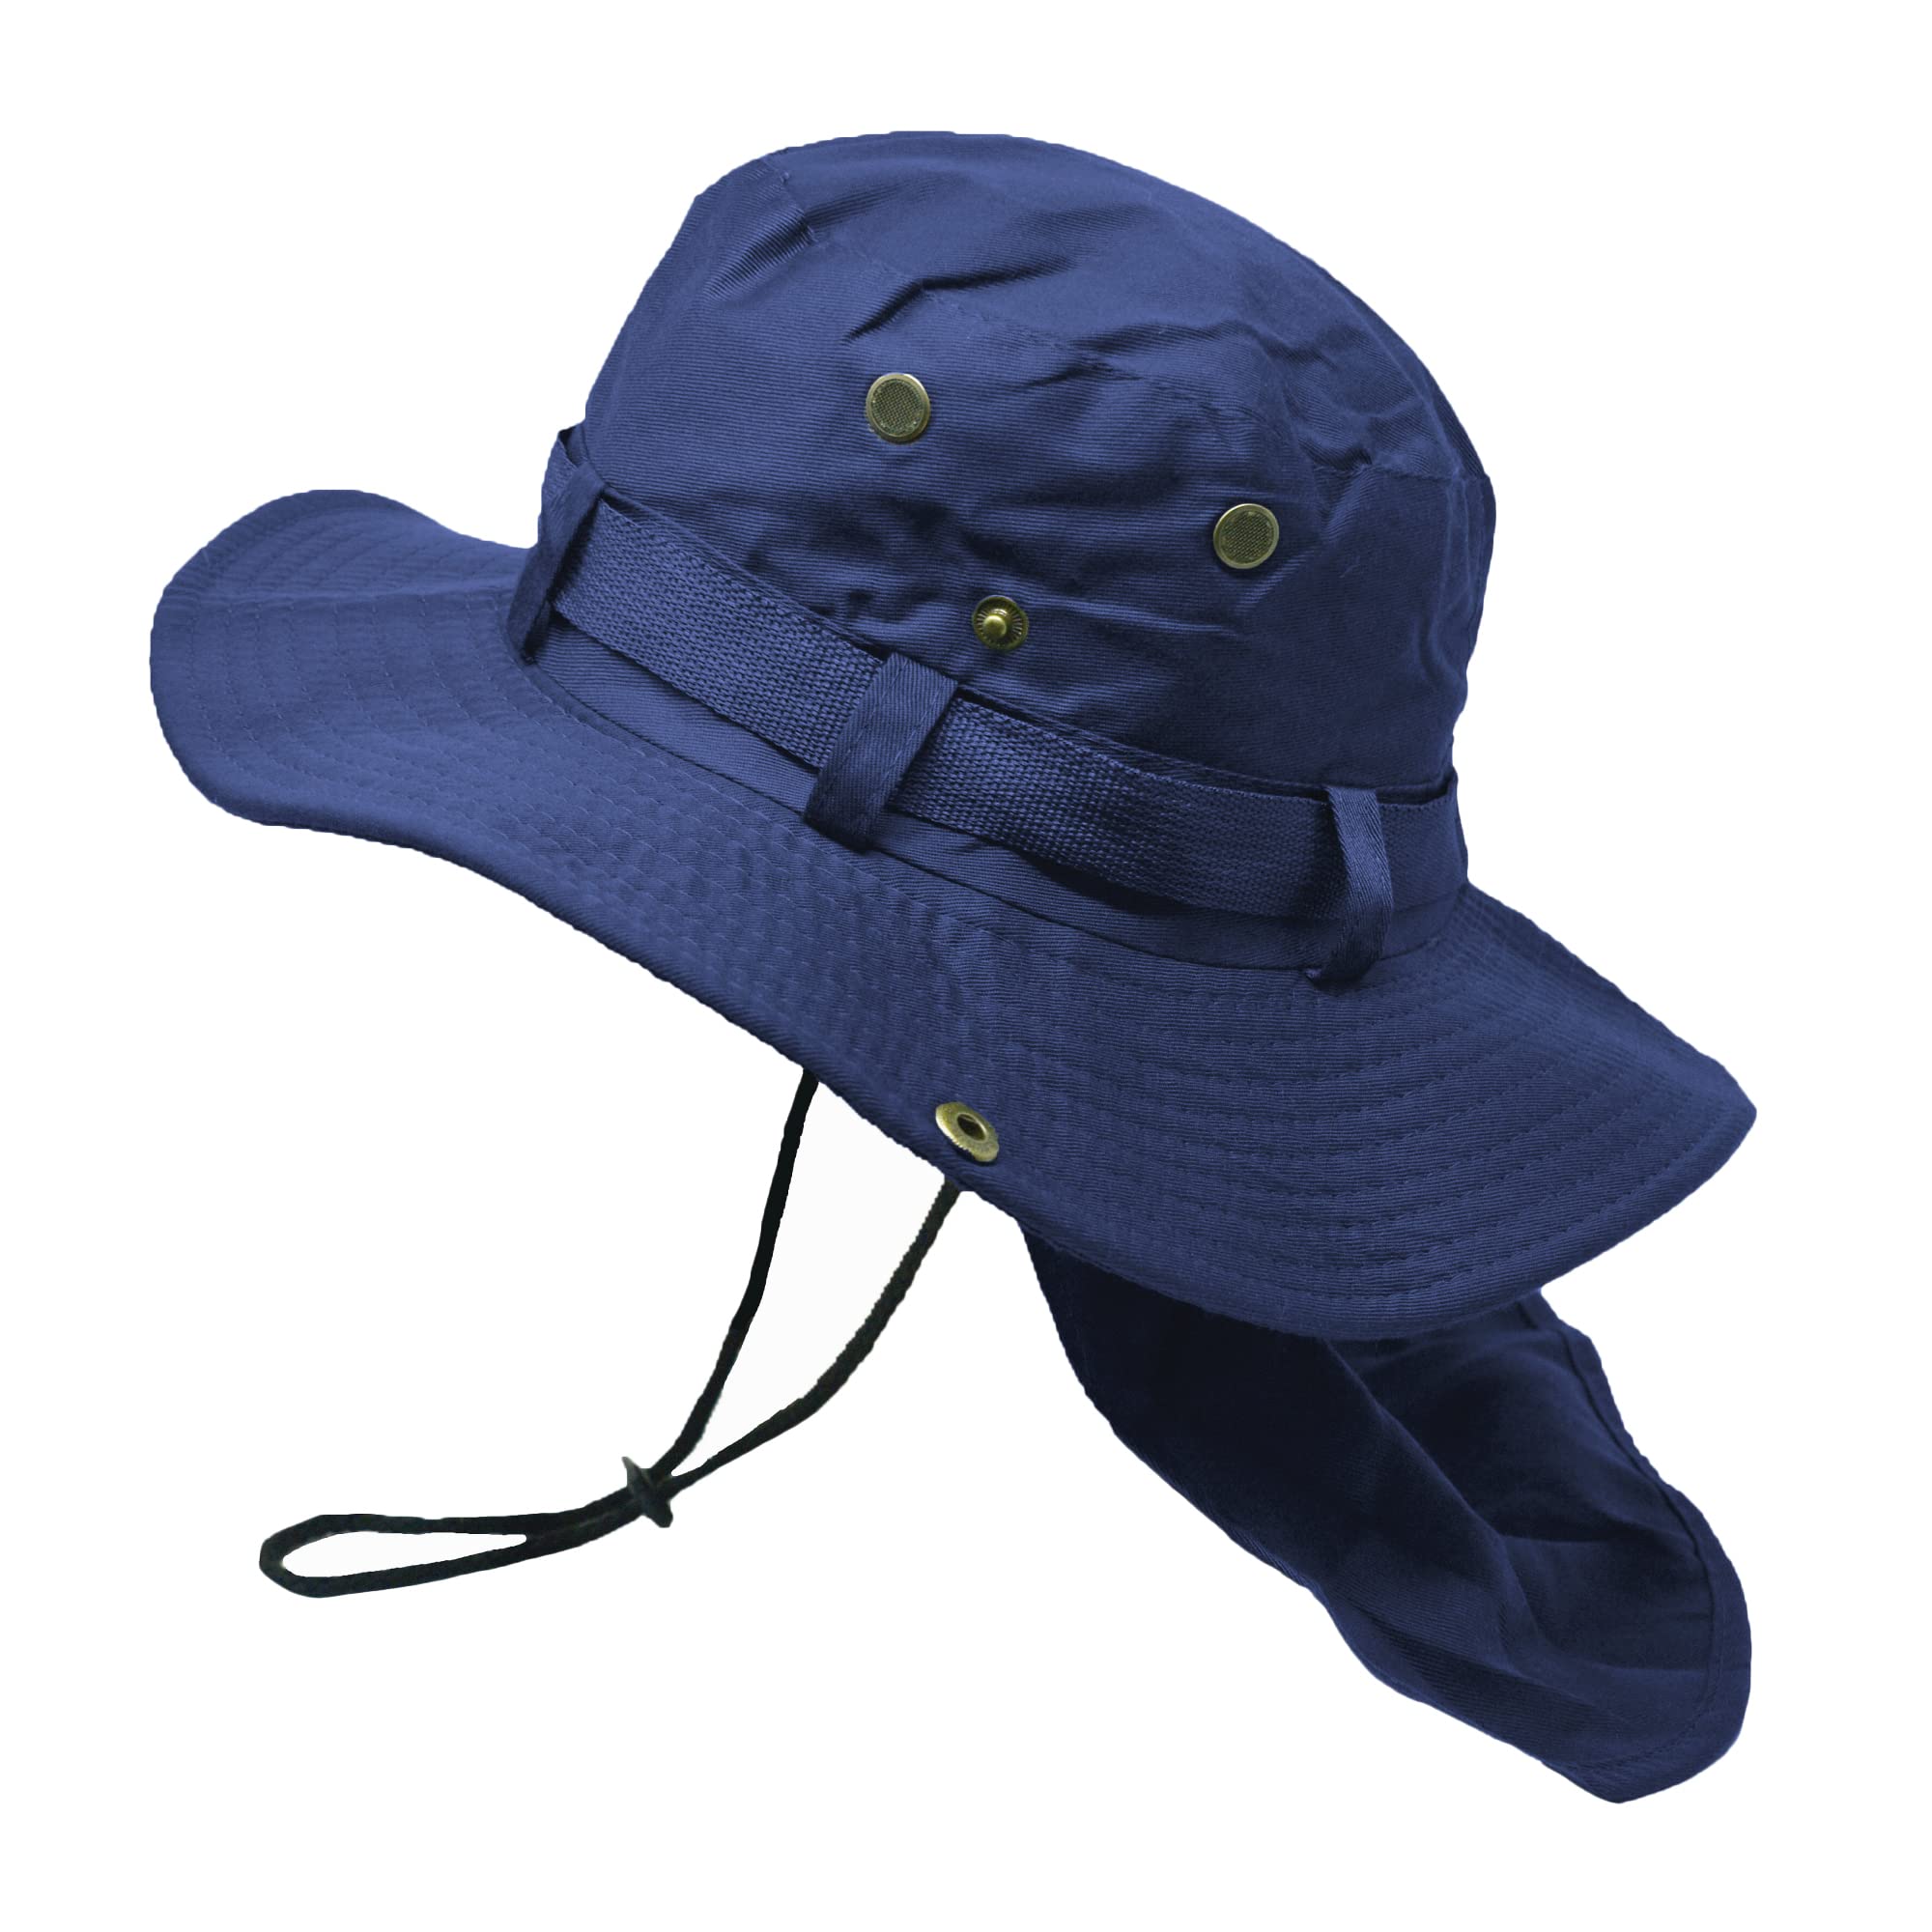 送料無料Glory Max Bucket Boonie Hat with Neck Flap Cover Sun Safari Wide Brim Fishing Garden Hiking Cap Navy並行輸